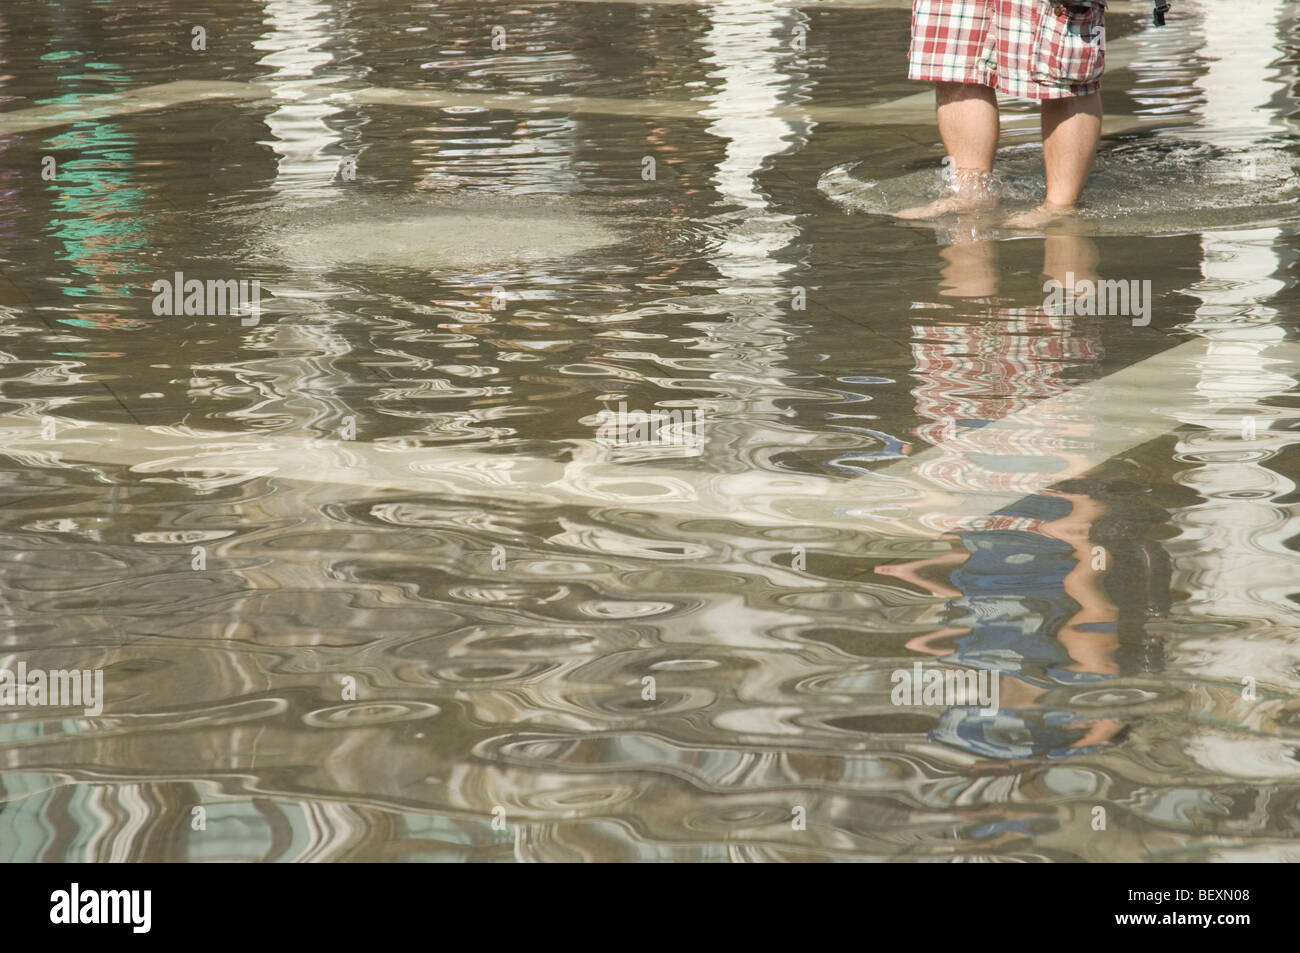 Abschnitt der Person in einer überfluteten Markusplatz in Venedig paddeln beschnitten Stockfoto